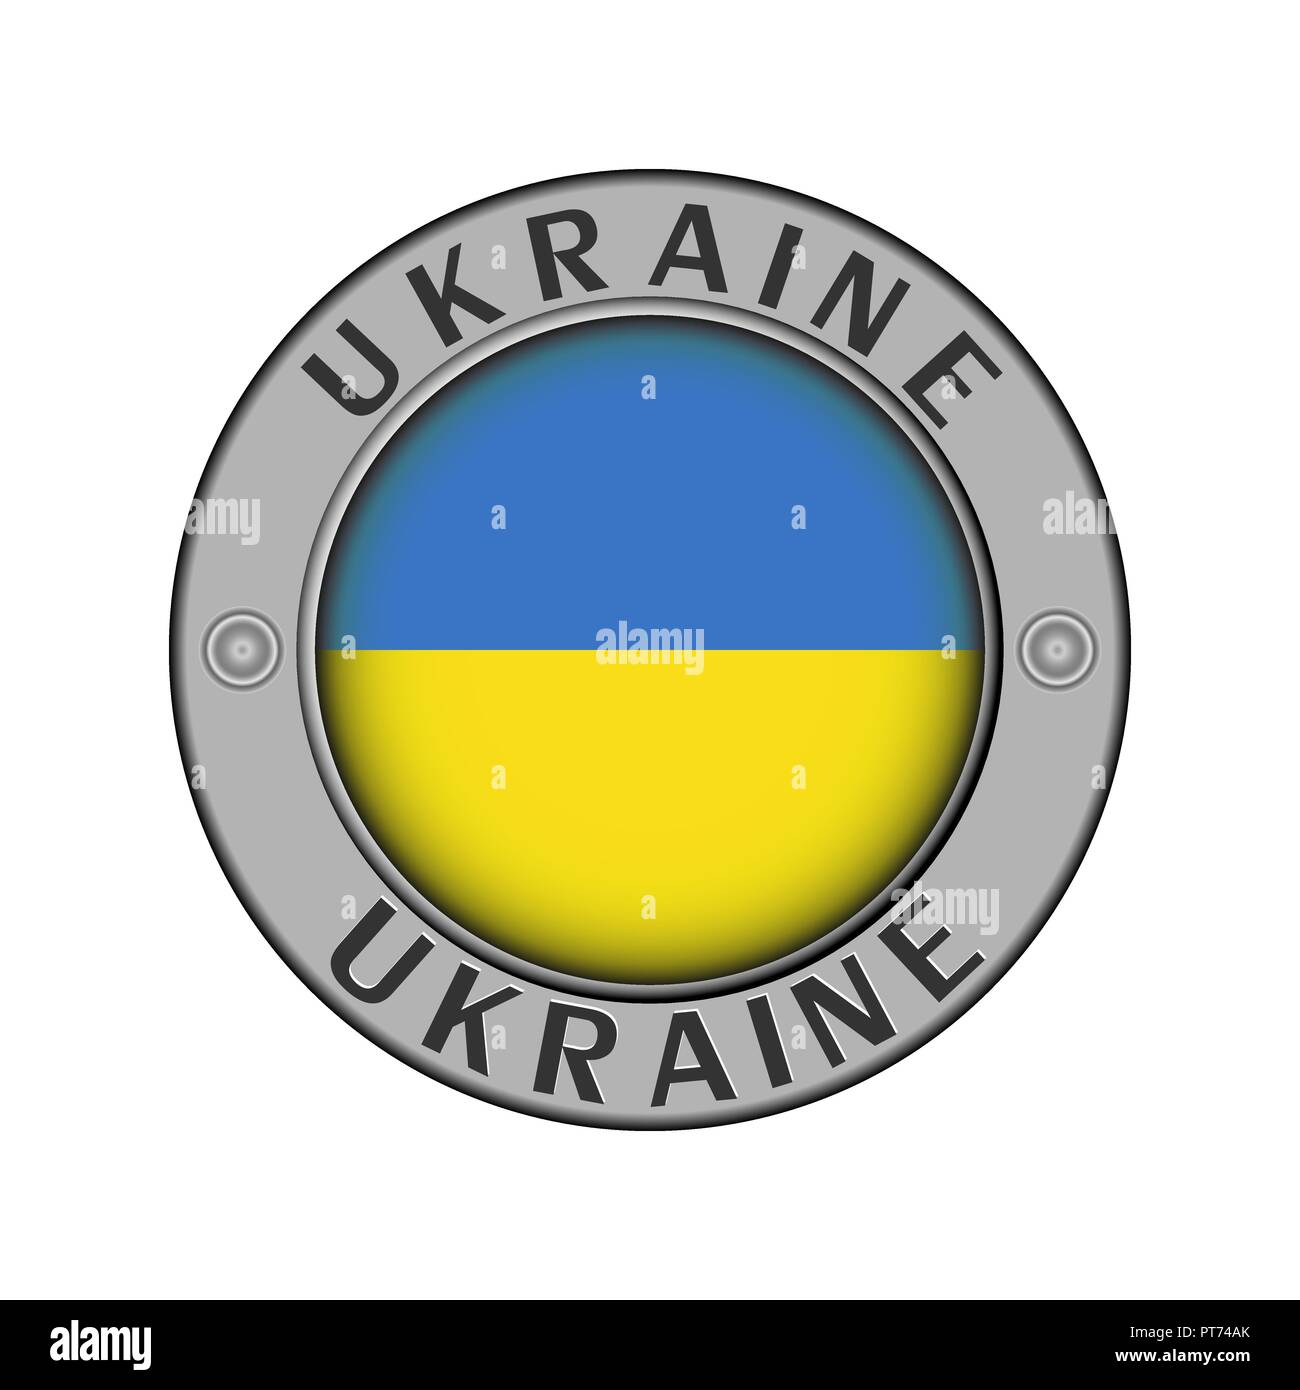 Rotondo di metallo medaglione con il nome del paese di Ucraina e un indicatore rotondo nel centro Illustrazione Vettoriale